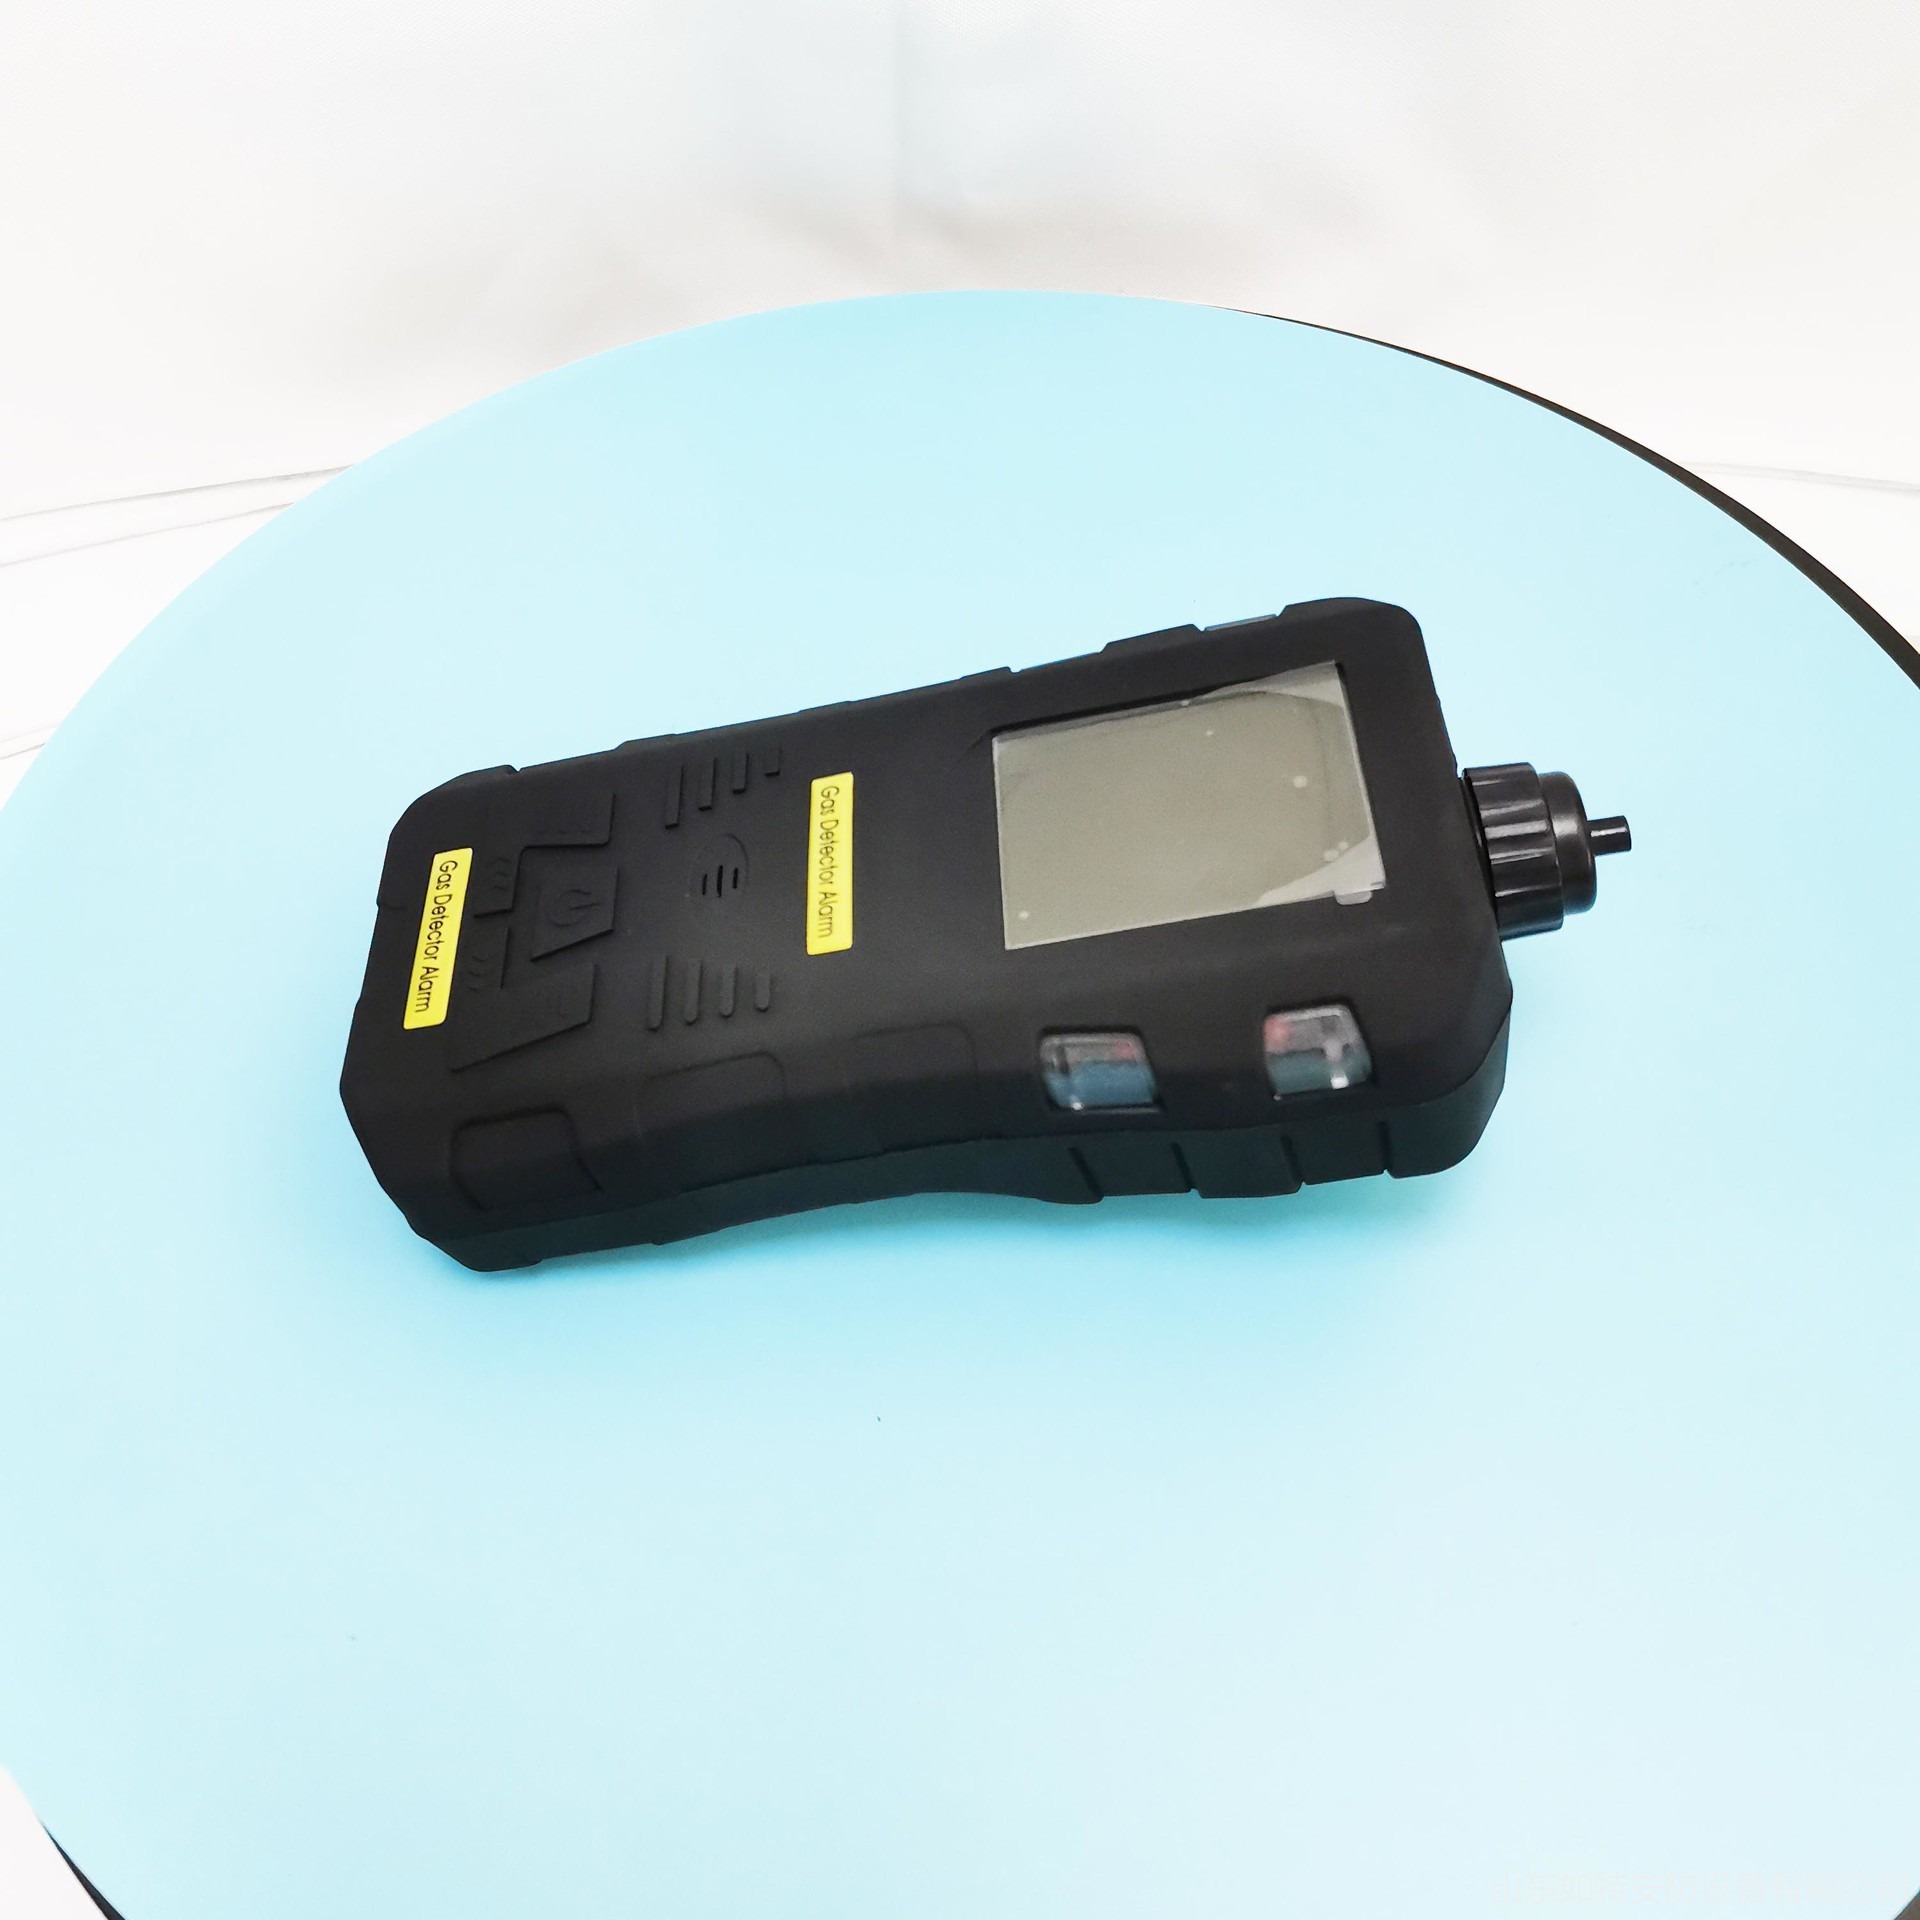 五合一气体检测仪 如特安防 本质安全型多合一气体检测仪 可充电电池图片